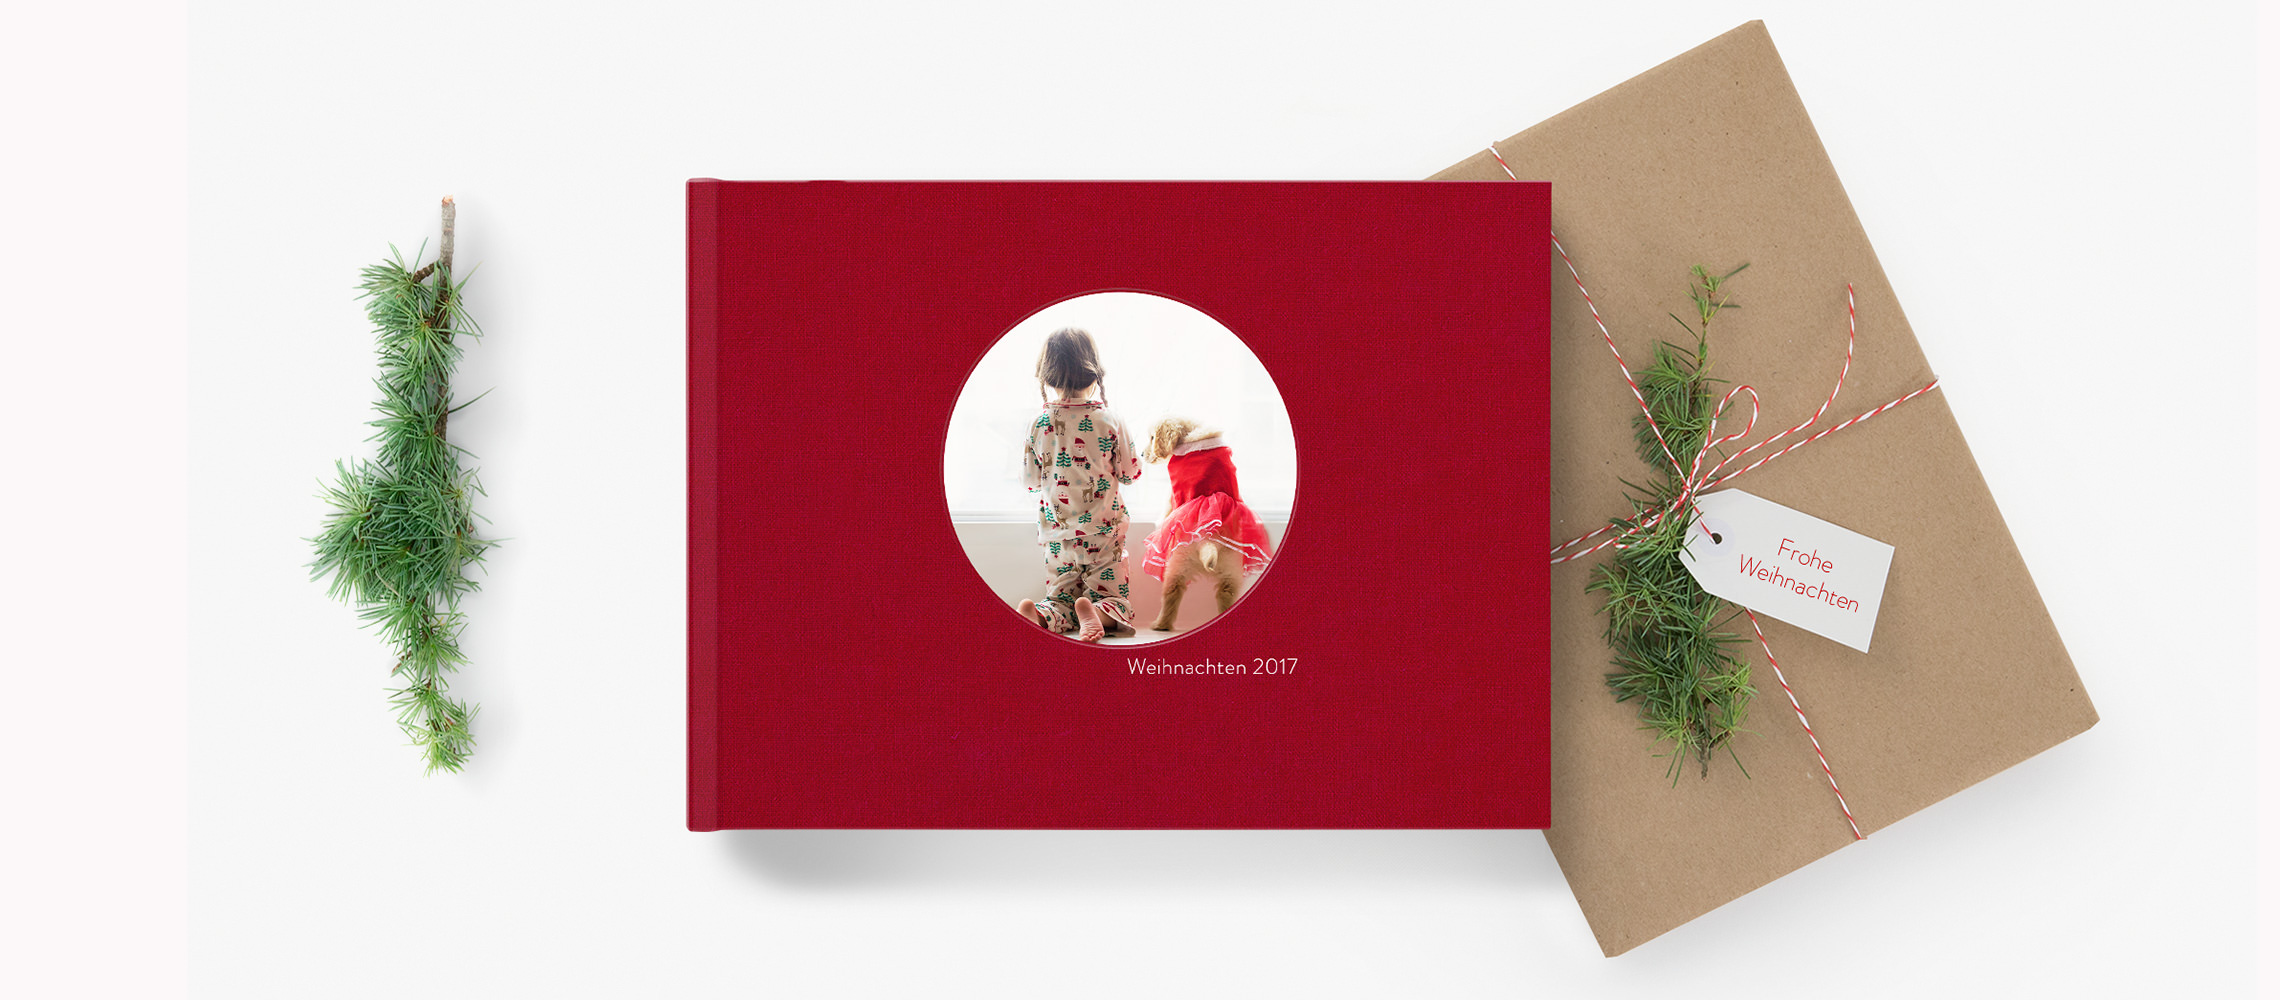 Ein rotes Fotobuch neben einem Weihnachtsgeschenk umgeben von Weihnachtsdekoration.